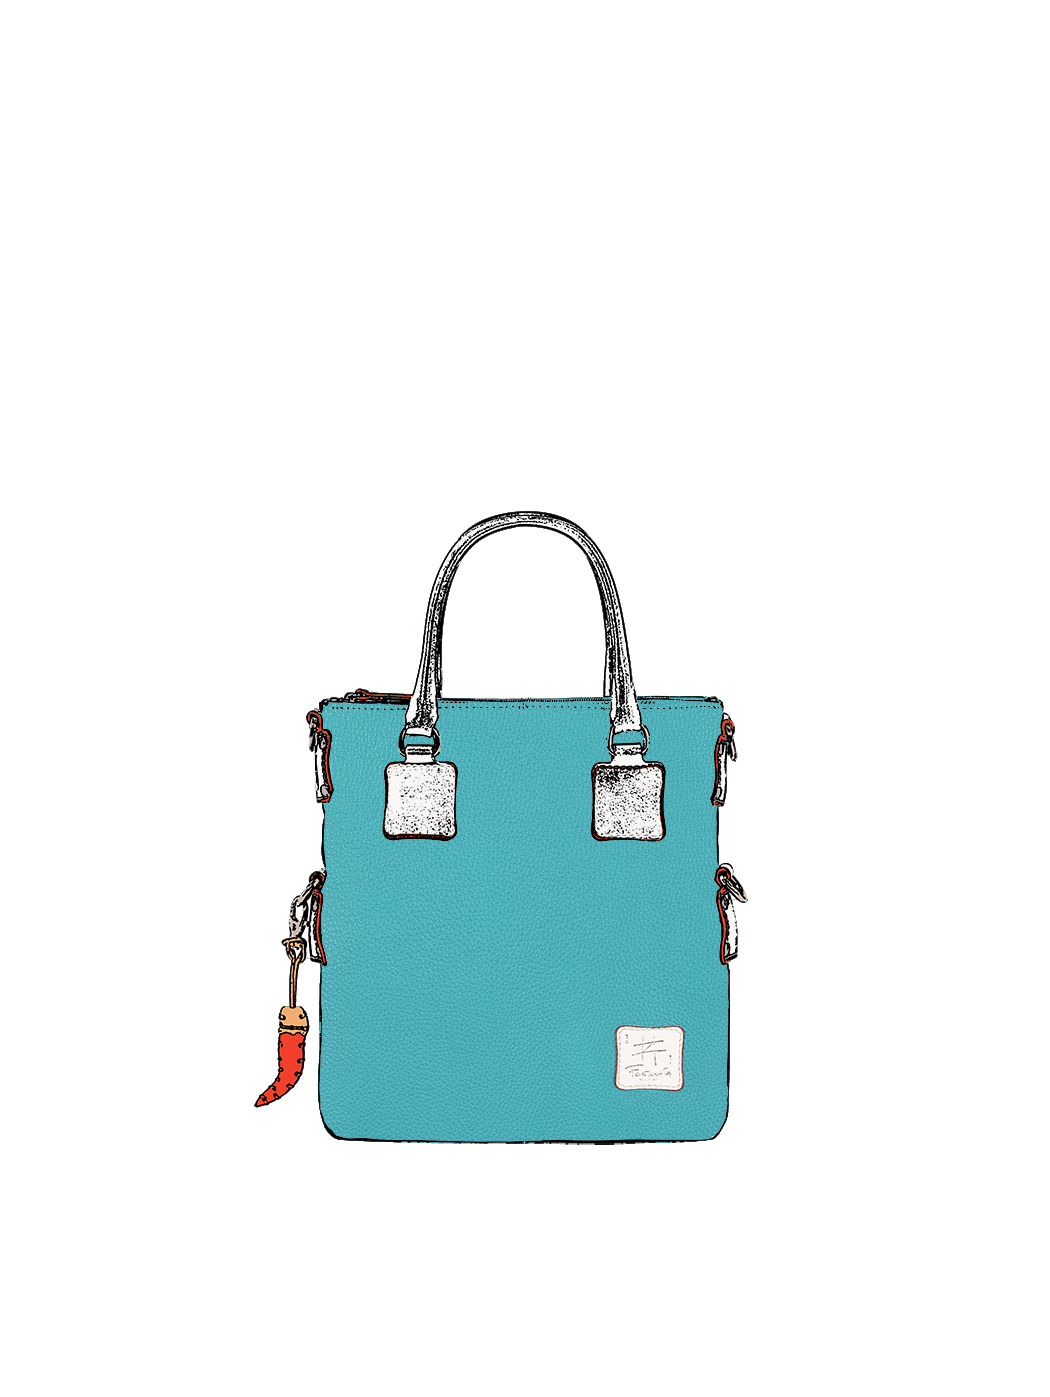 Дизайнерская мини - сумка из коллекции Fortunata светло - голубого цвета